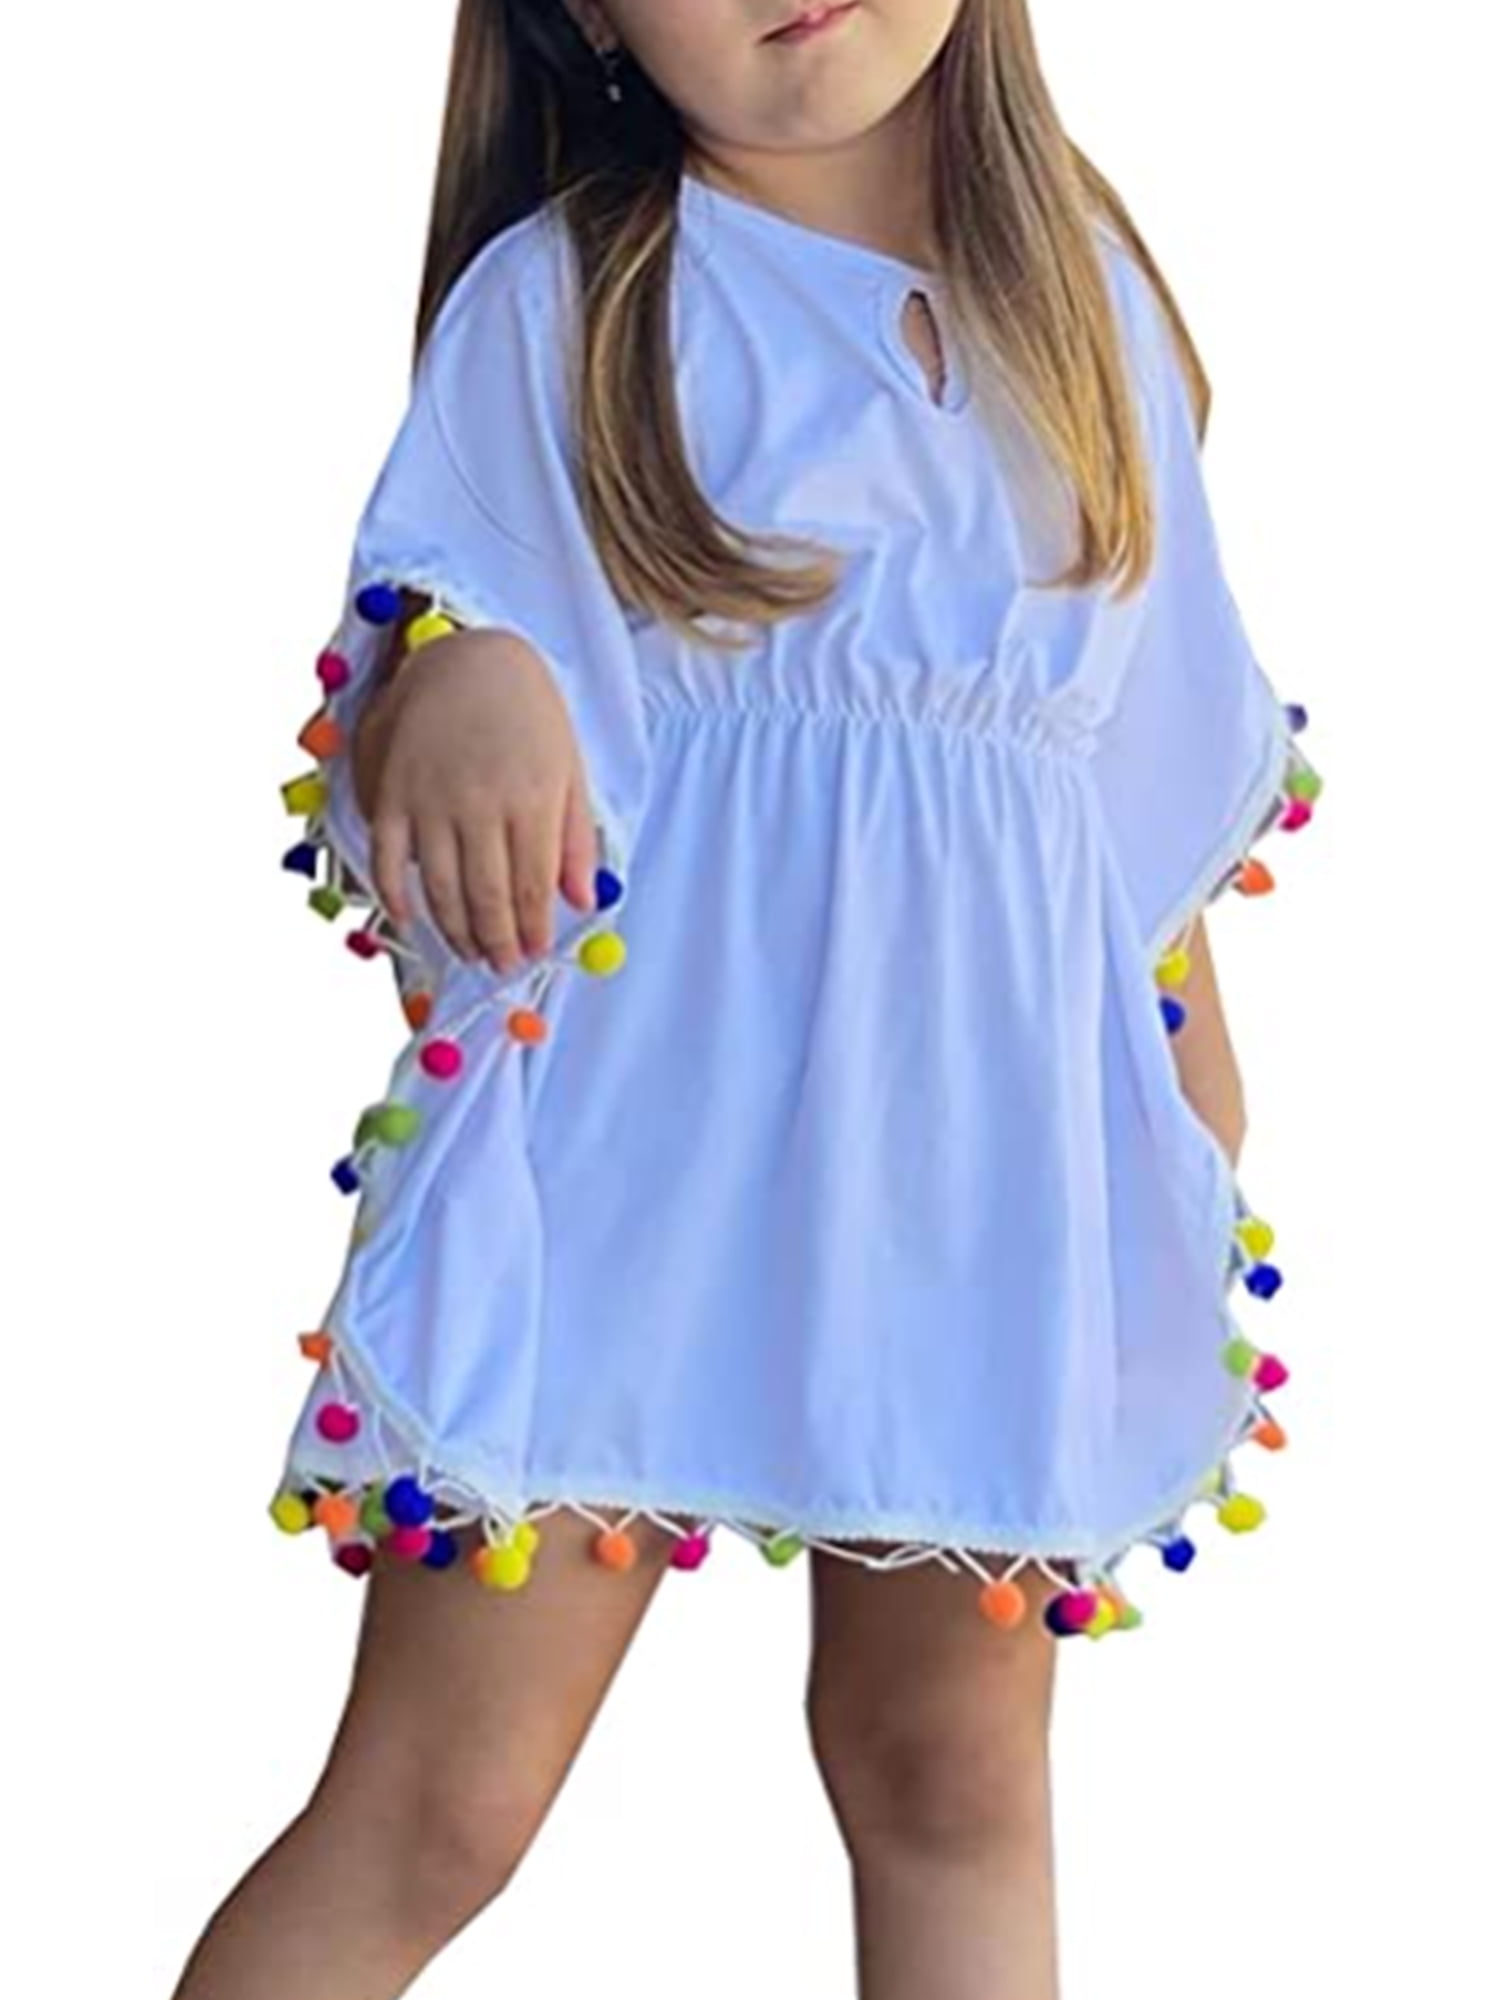 Cover Up for Girls Toddler Beach Swimwear Coverup Kids V-Neck Swimsuit Wraps with Tassel for Summer Dress Top Skirt 